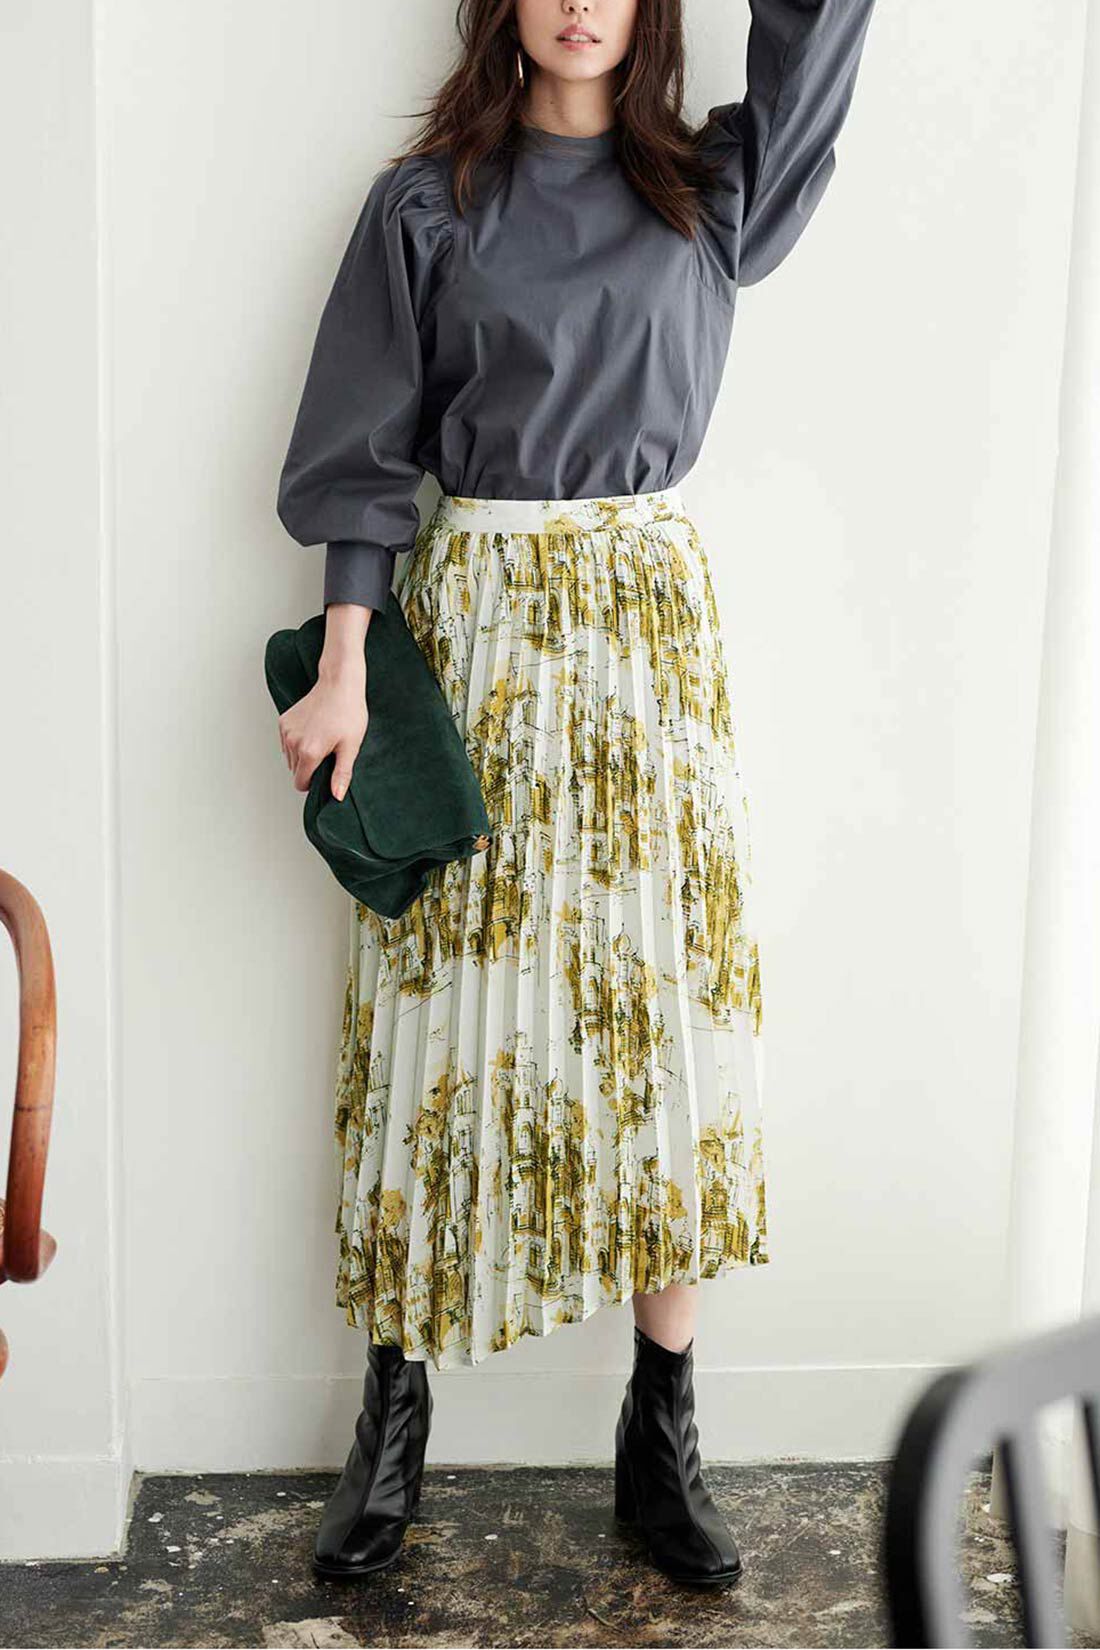 イディット|IEDIT[イディット]　ヴィンテージライクな趣のプリントプリーツスカート〈グリーン〉|※着用イメージです。お届けするカラーとは異なります。